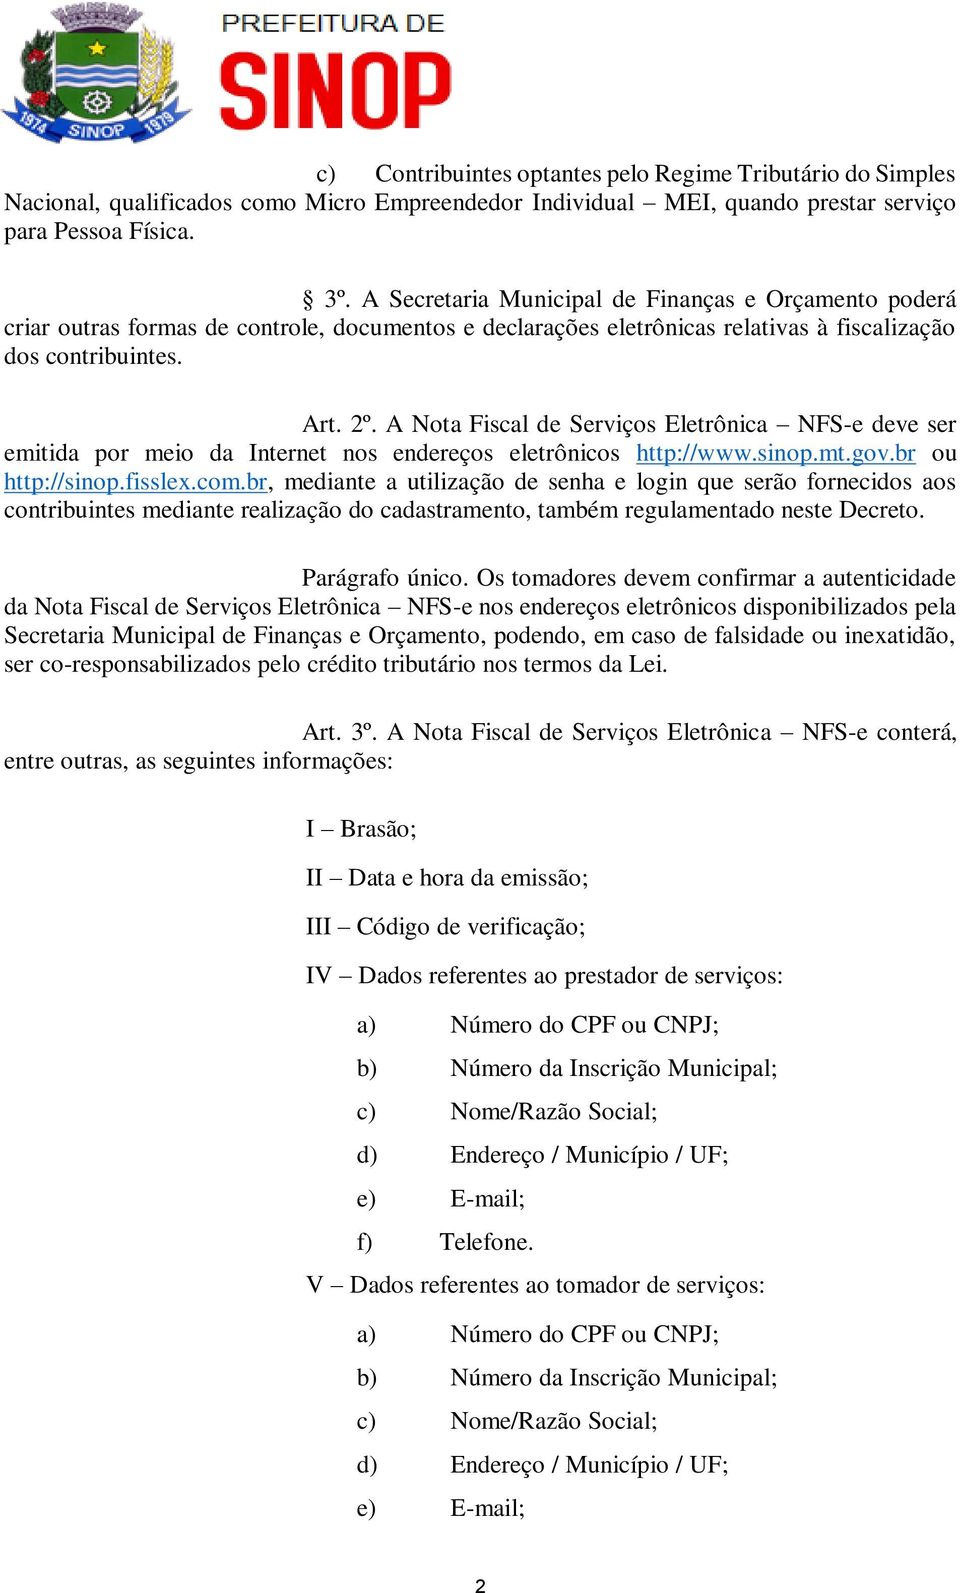 A Nota Fiscal de Serviços Eletrônica NFS-e deve ser emitida por meio da Internet nos endereços eletrônicos http://www.sinop.mt.gov.br ou http://sinop.fisslex.com.